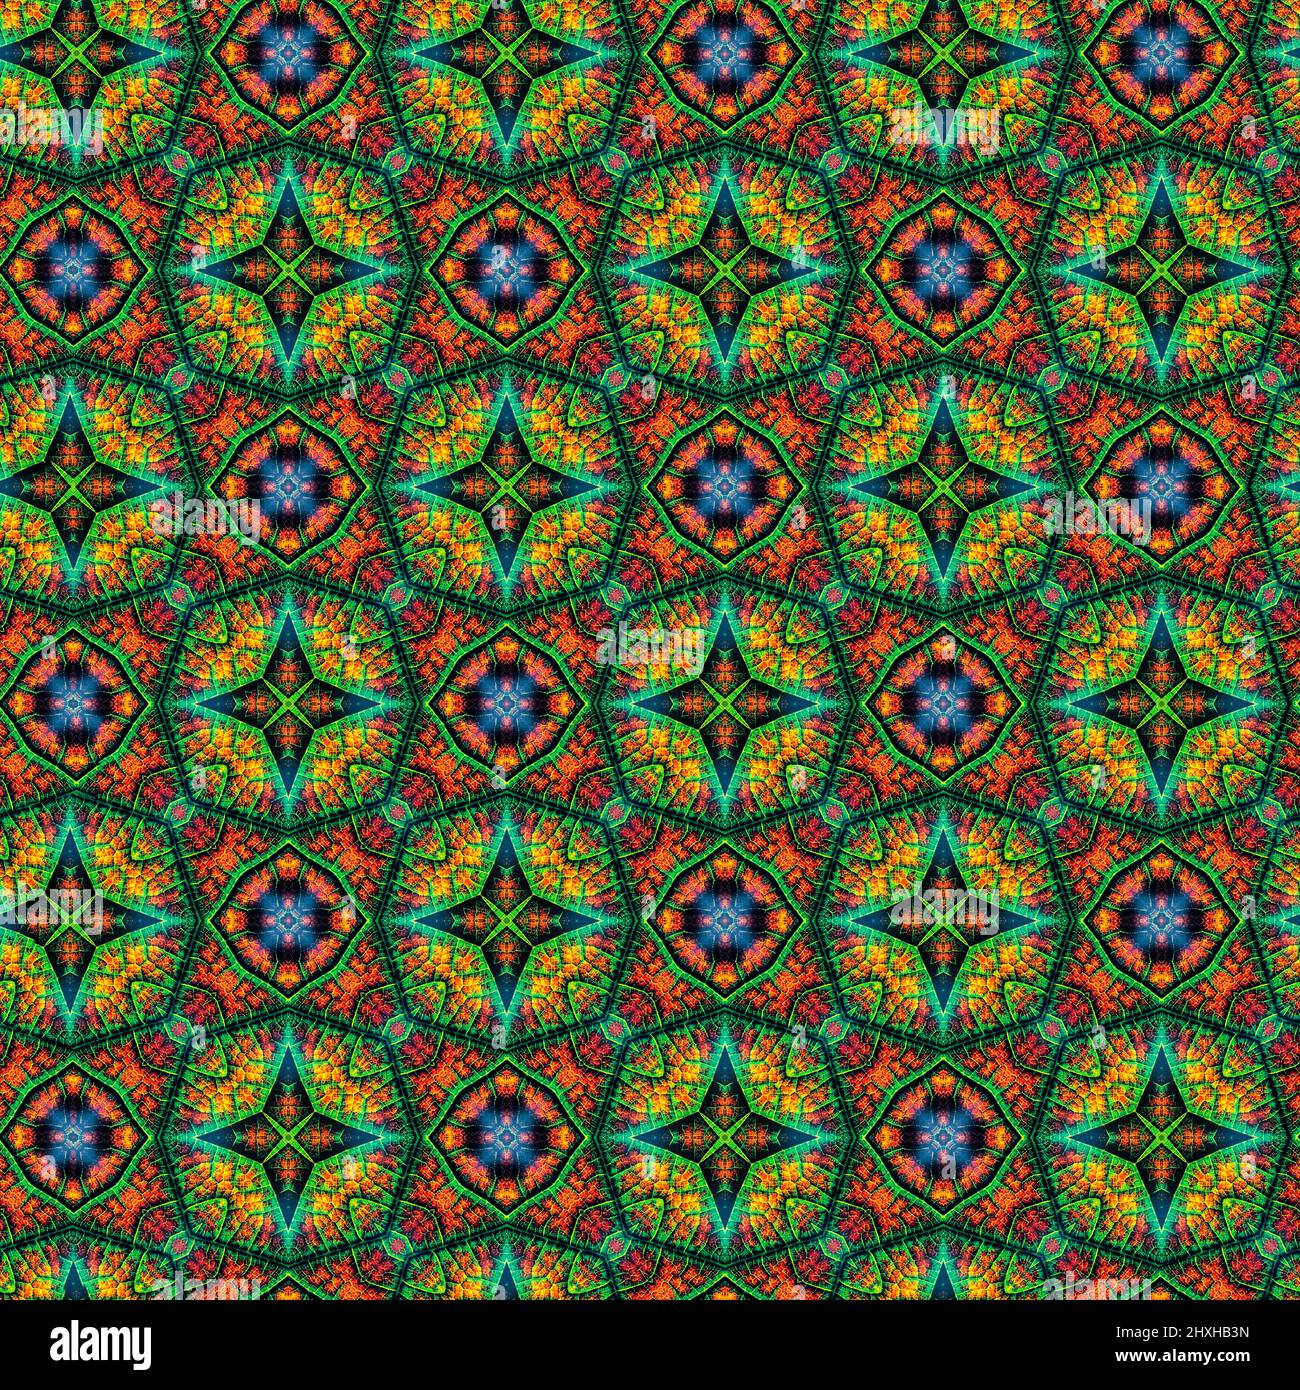 Formas interesantes crear un hermoso diseño simétrico, patrón que puede ser perfectamente en mosaico Foto de stock